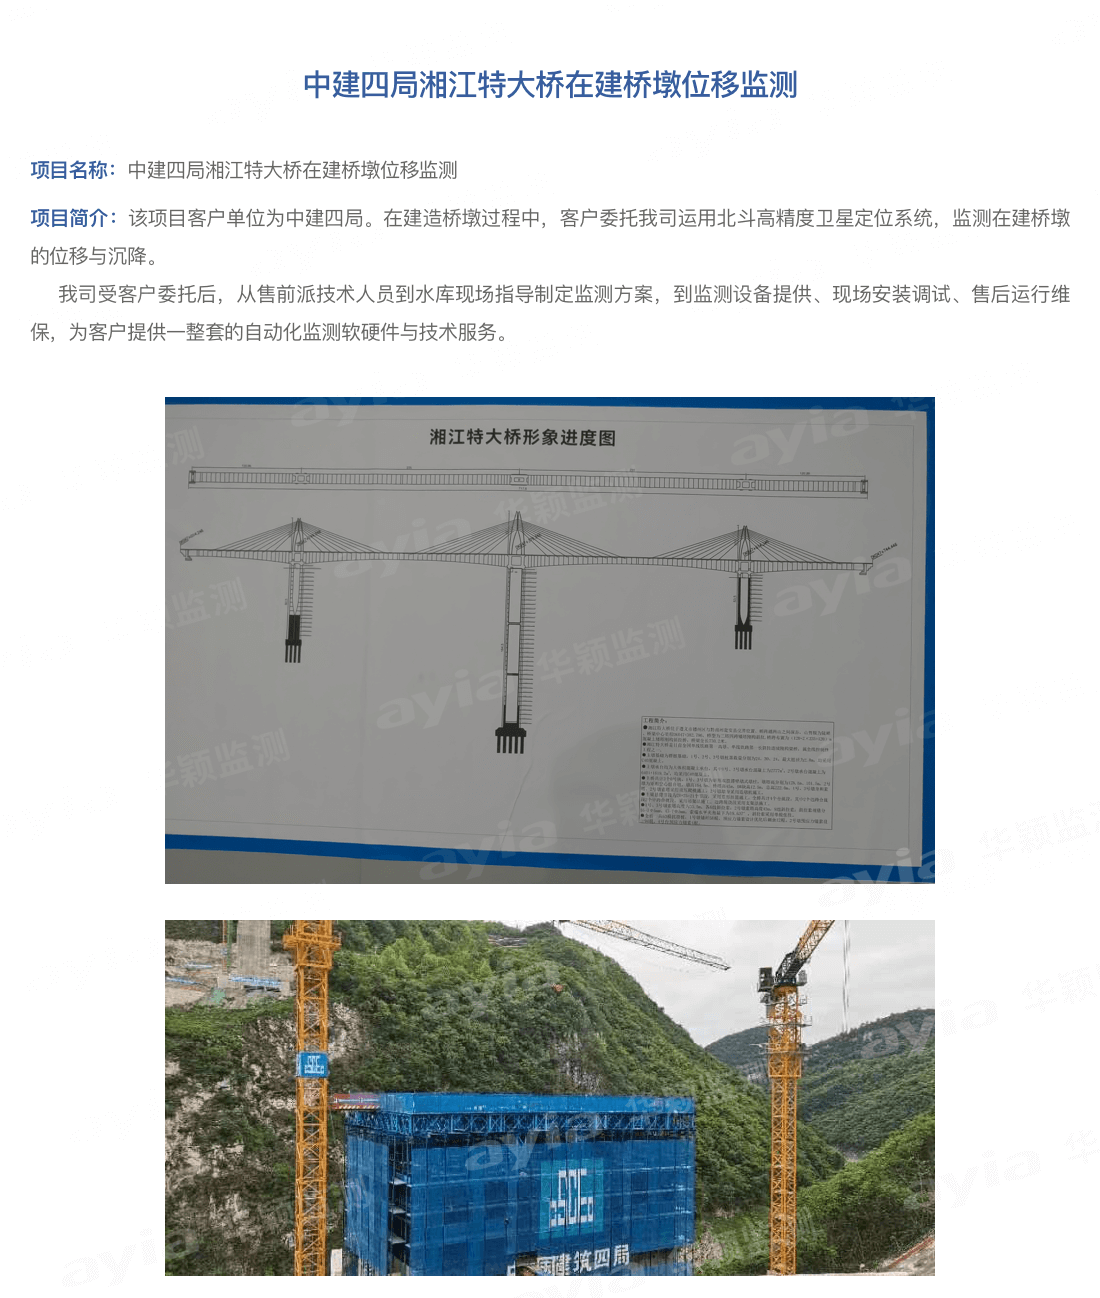 中建四局湘江特大桥在建桥墩位移监测_01.png